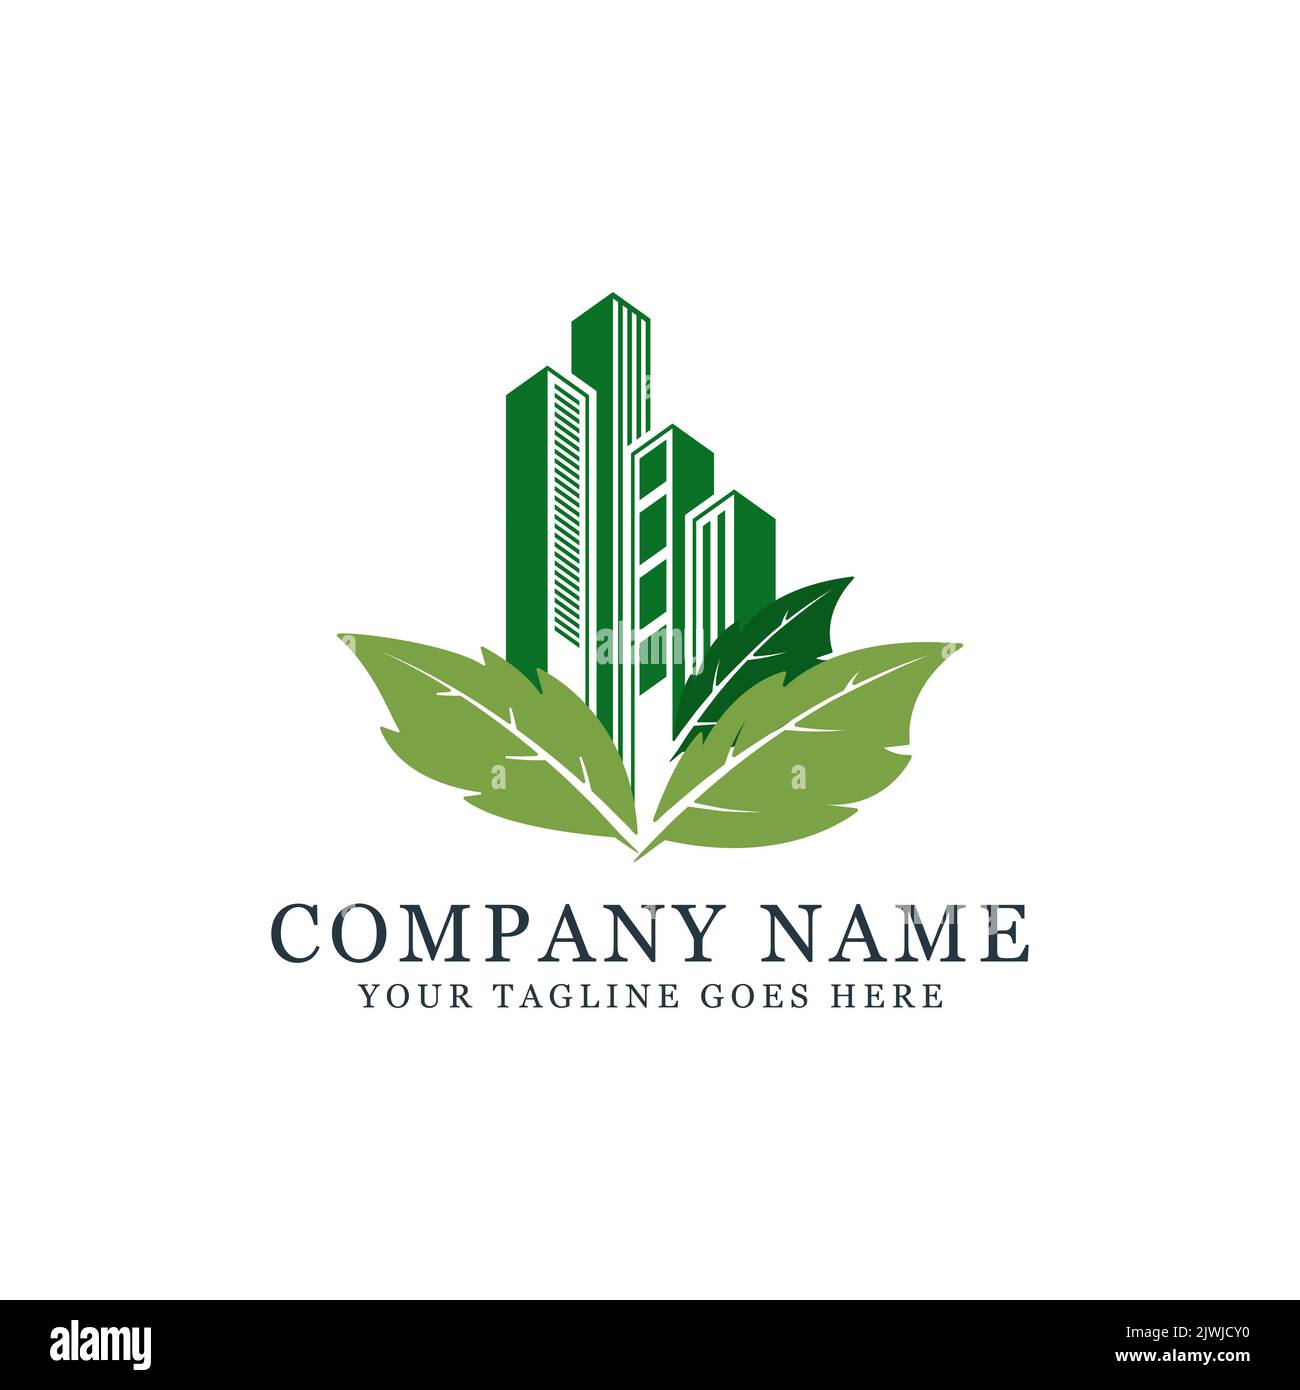 Green Building Bau Logo Design mit Blatt, am besten für den Bau, Immobilien, Wolkenkratzer und Unternehmen Logo Stock Vektor